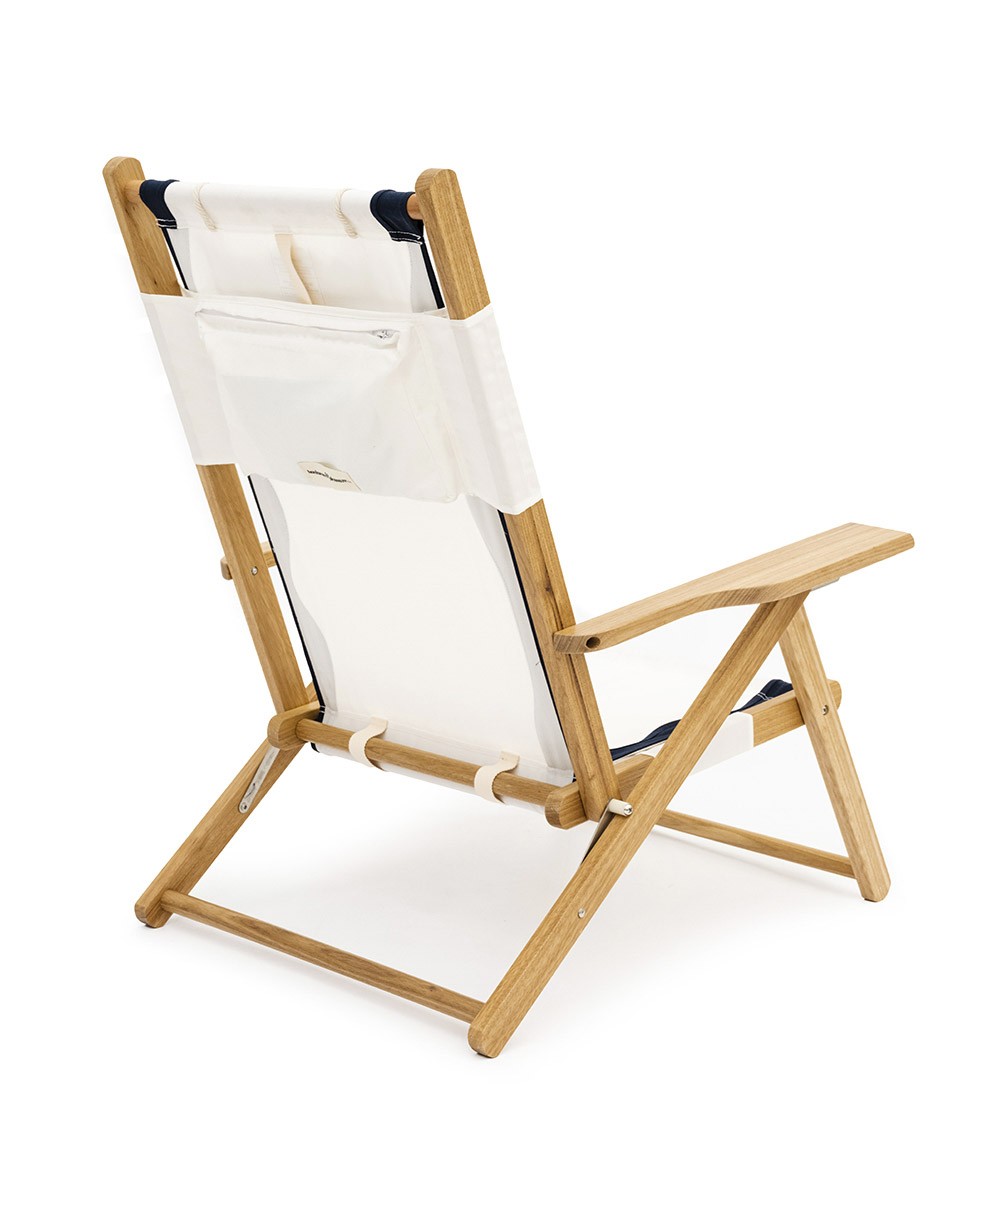 Hier abgebildet ist der The Tommy Chair in Rivie White von Business & Pleasure Co. – im RAUM concept store